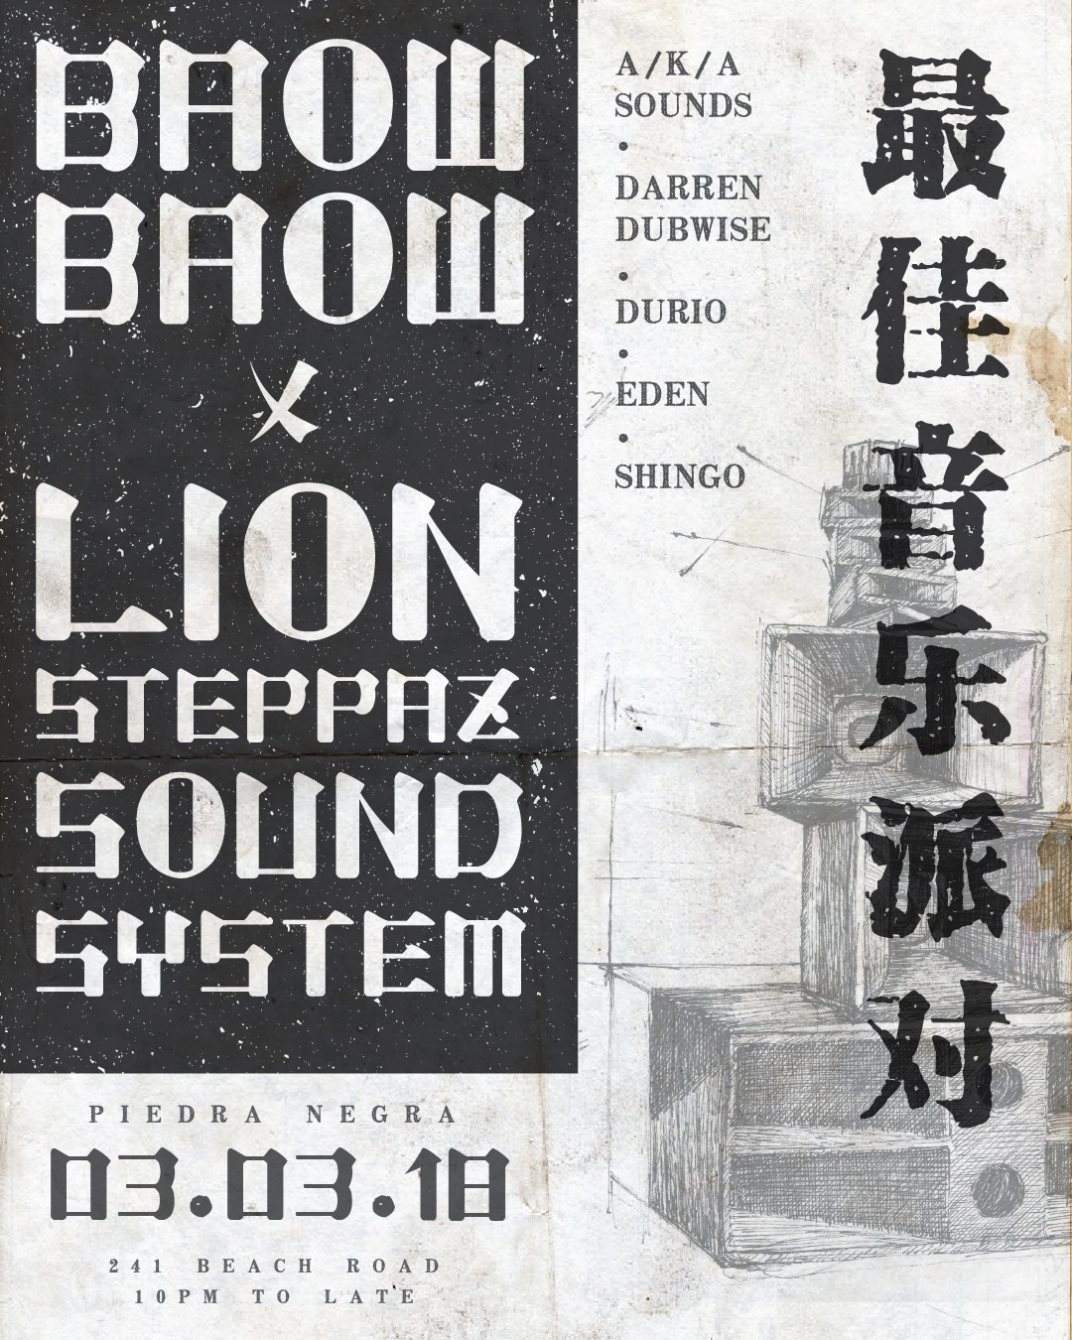 Baow Baow X Lion Steppaz Sound - フライヤー表